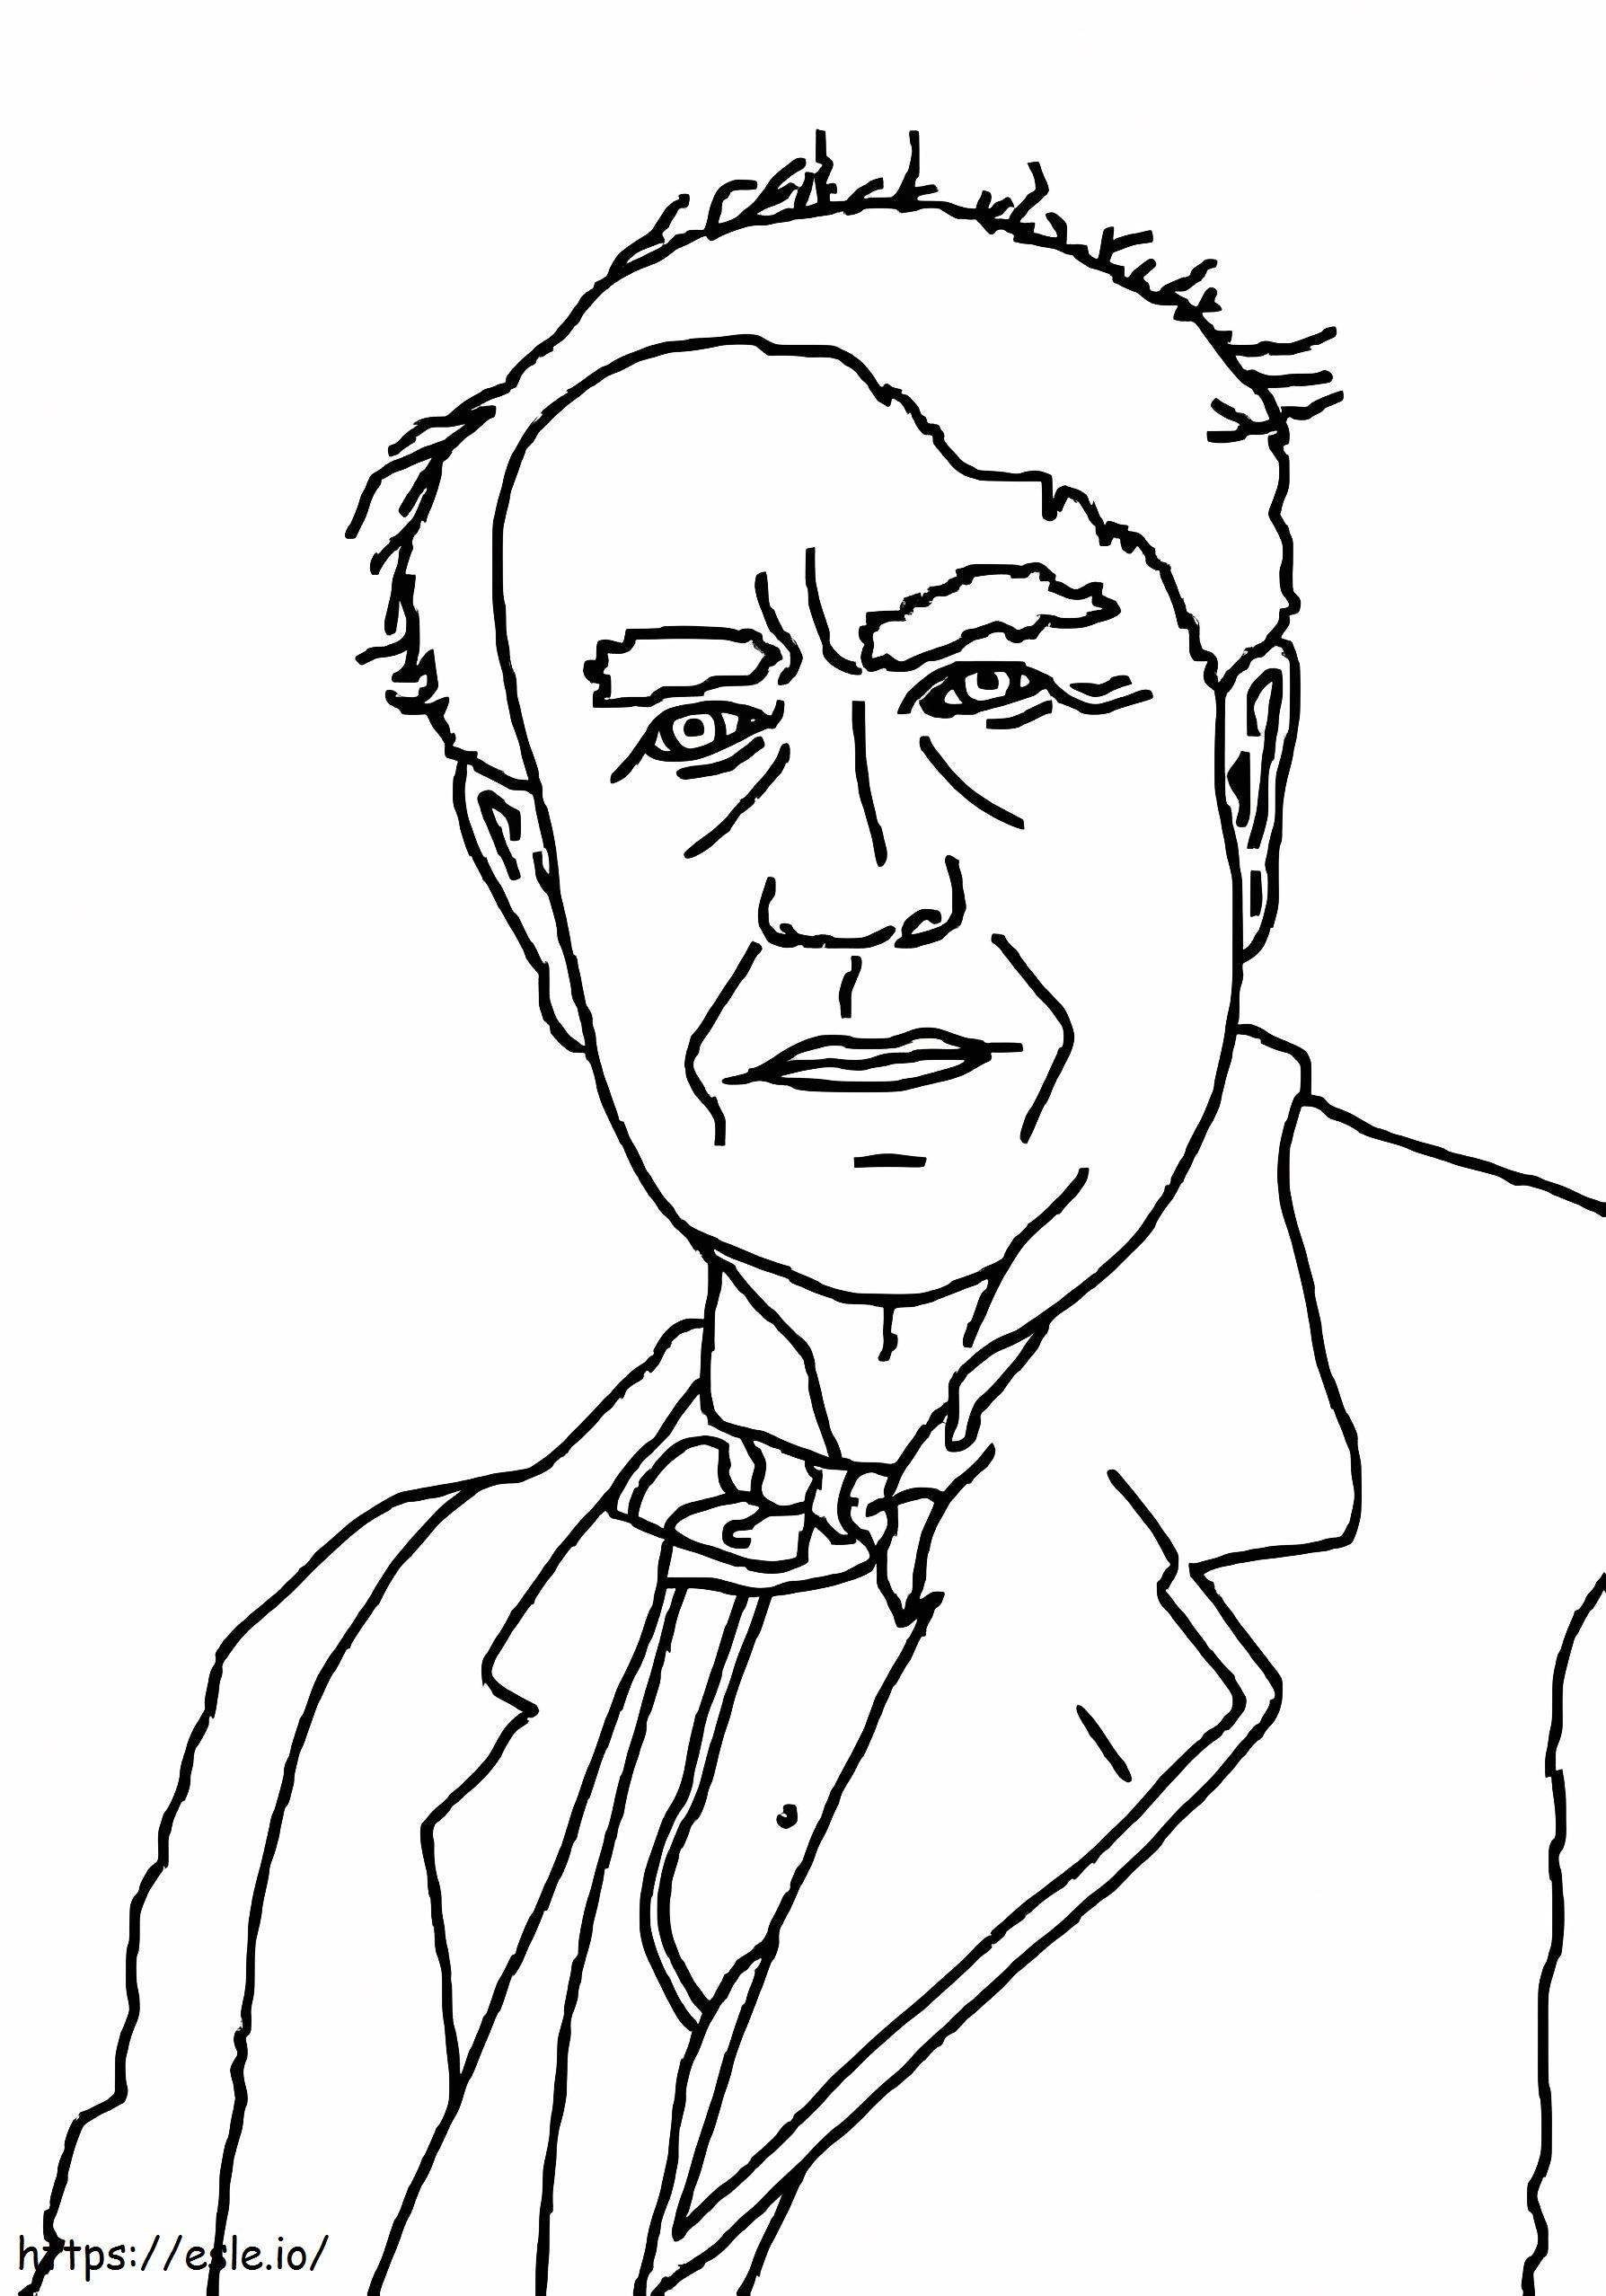 Thomas Edison afdrukbaar kleurplaat kleurplaat